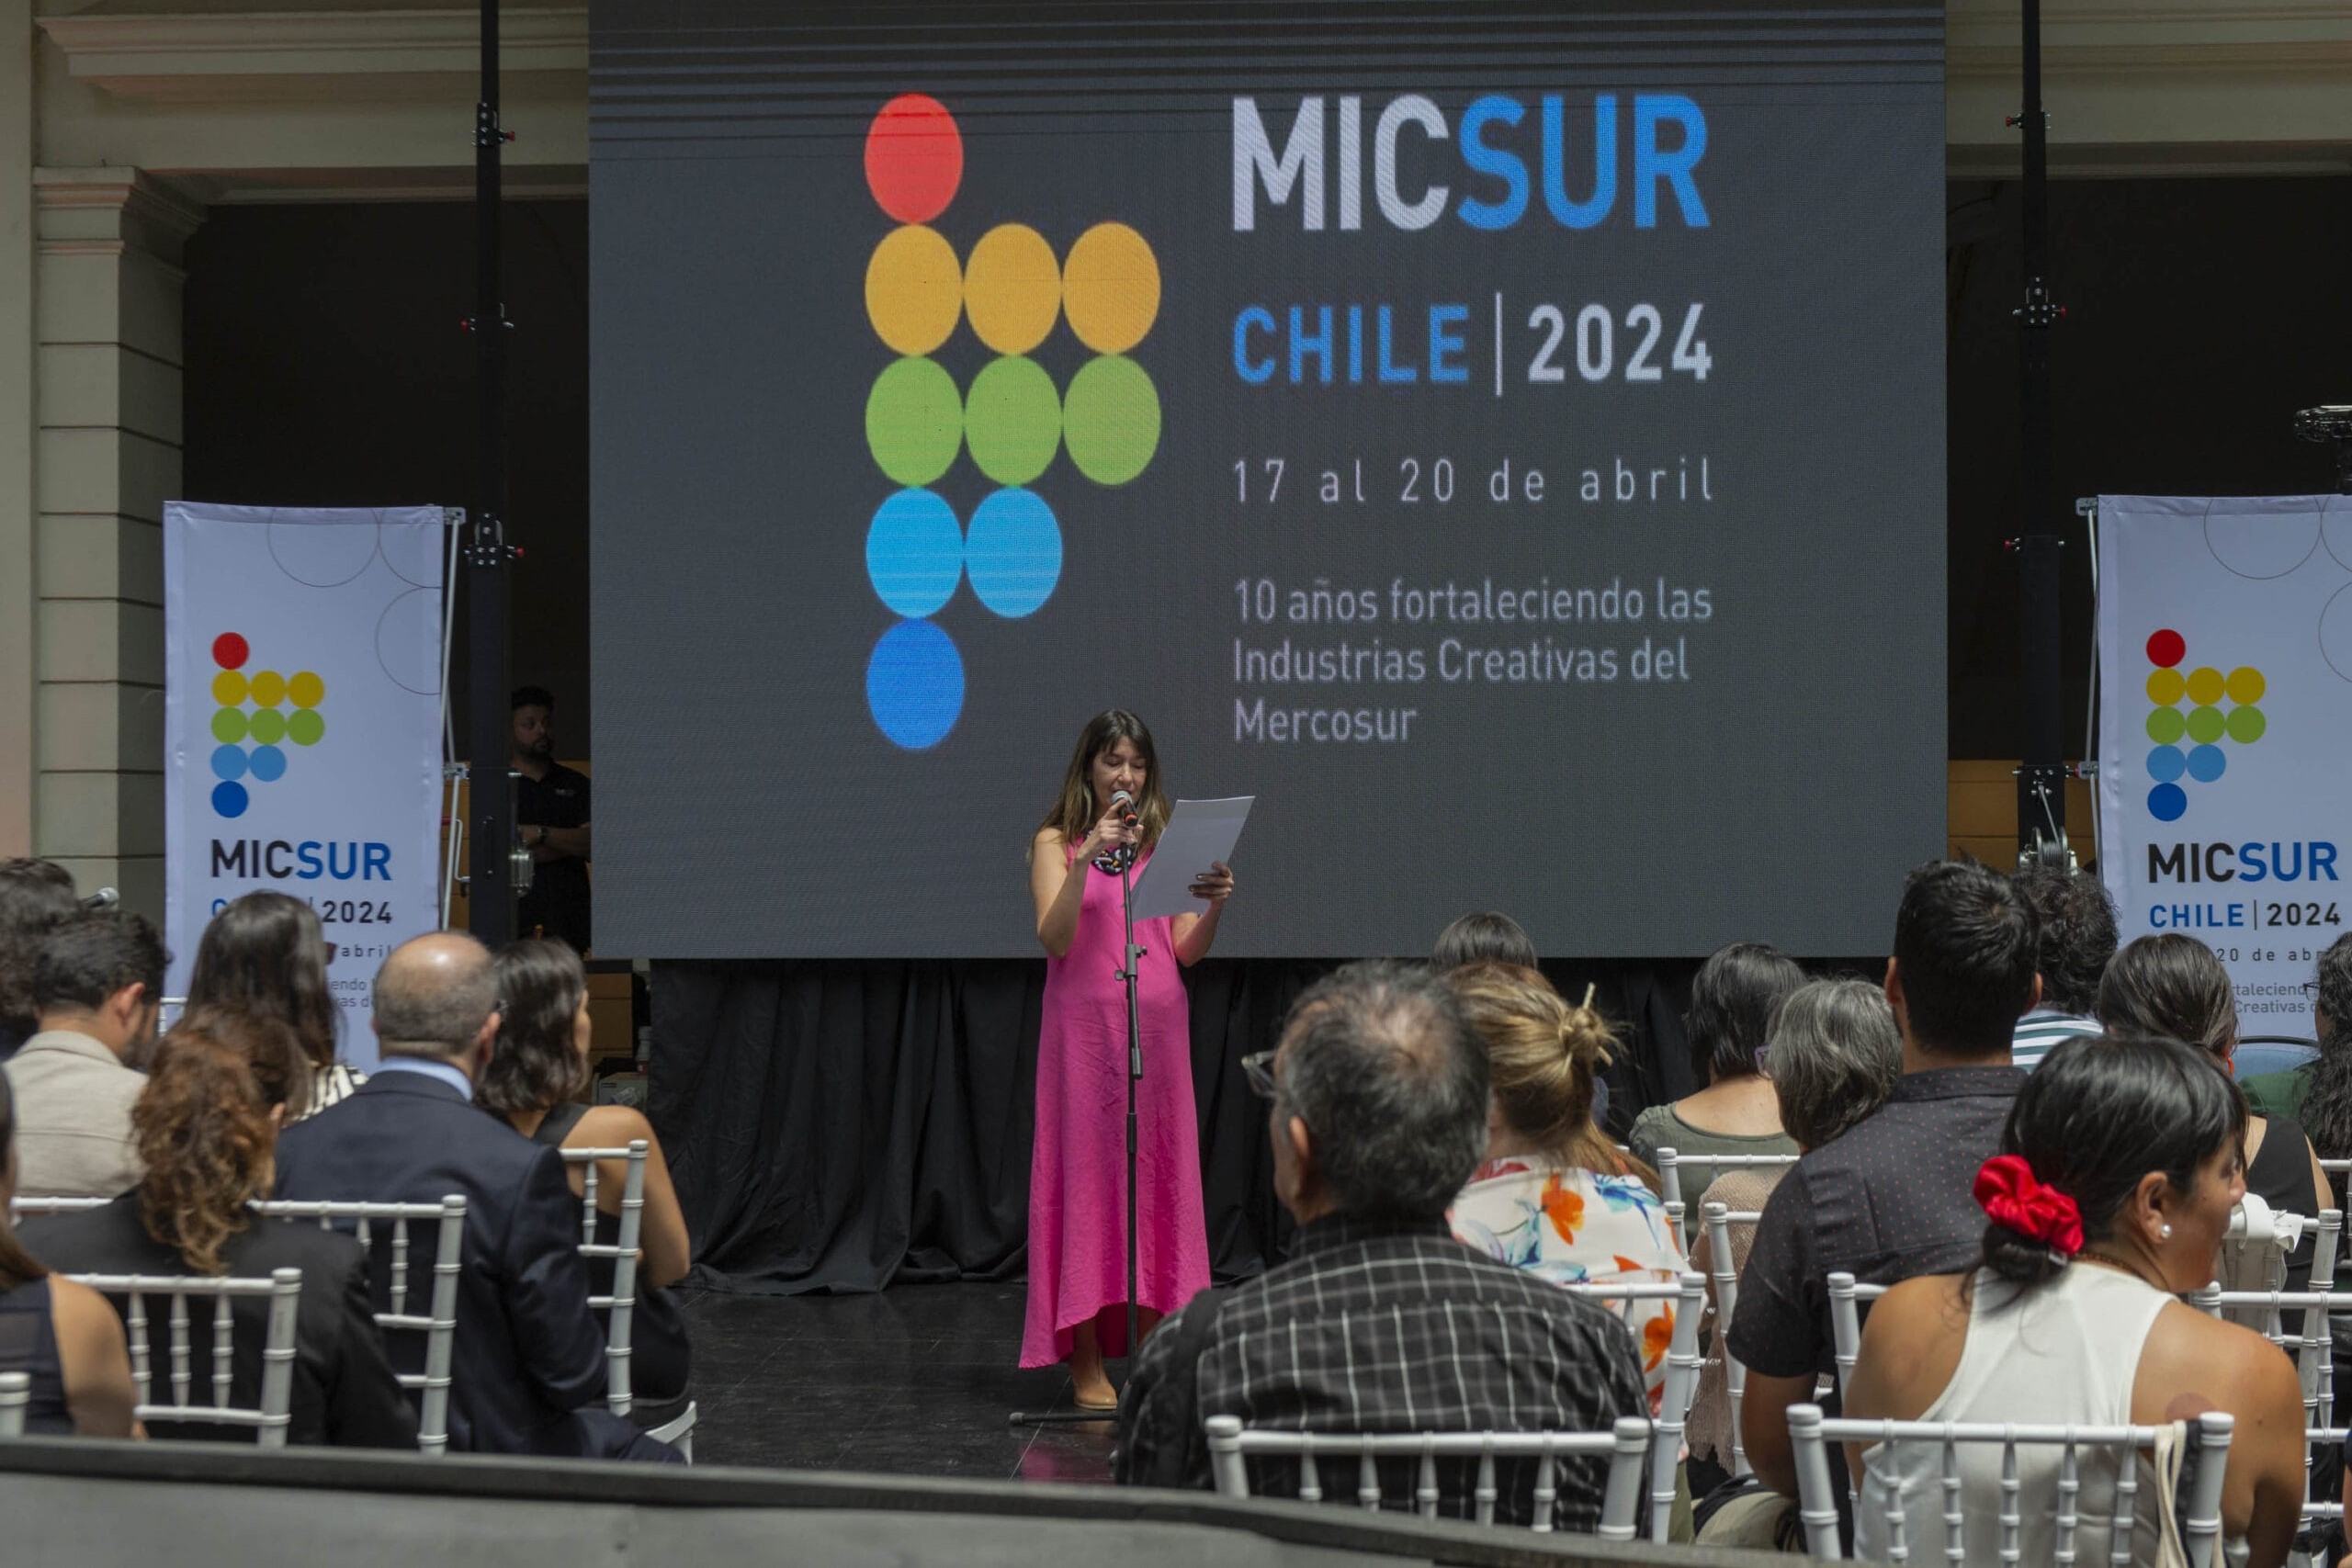 Cuarenta agentes culturales de Colombia serán protagonistas en MICSUR 2024